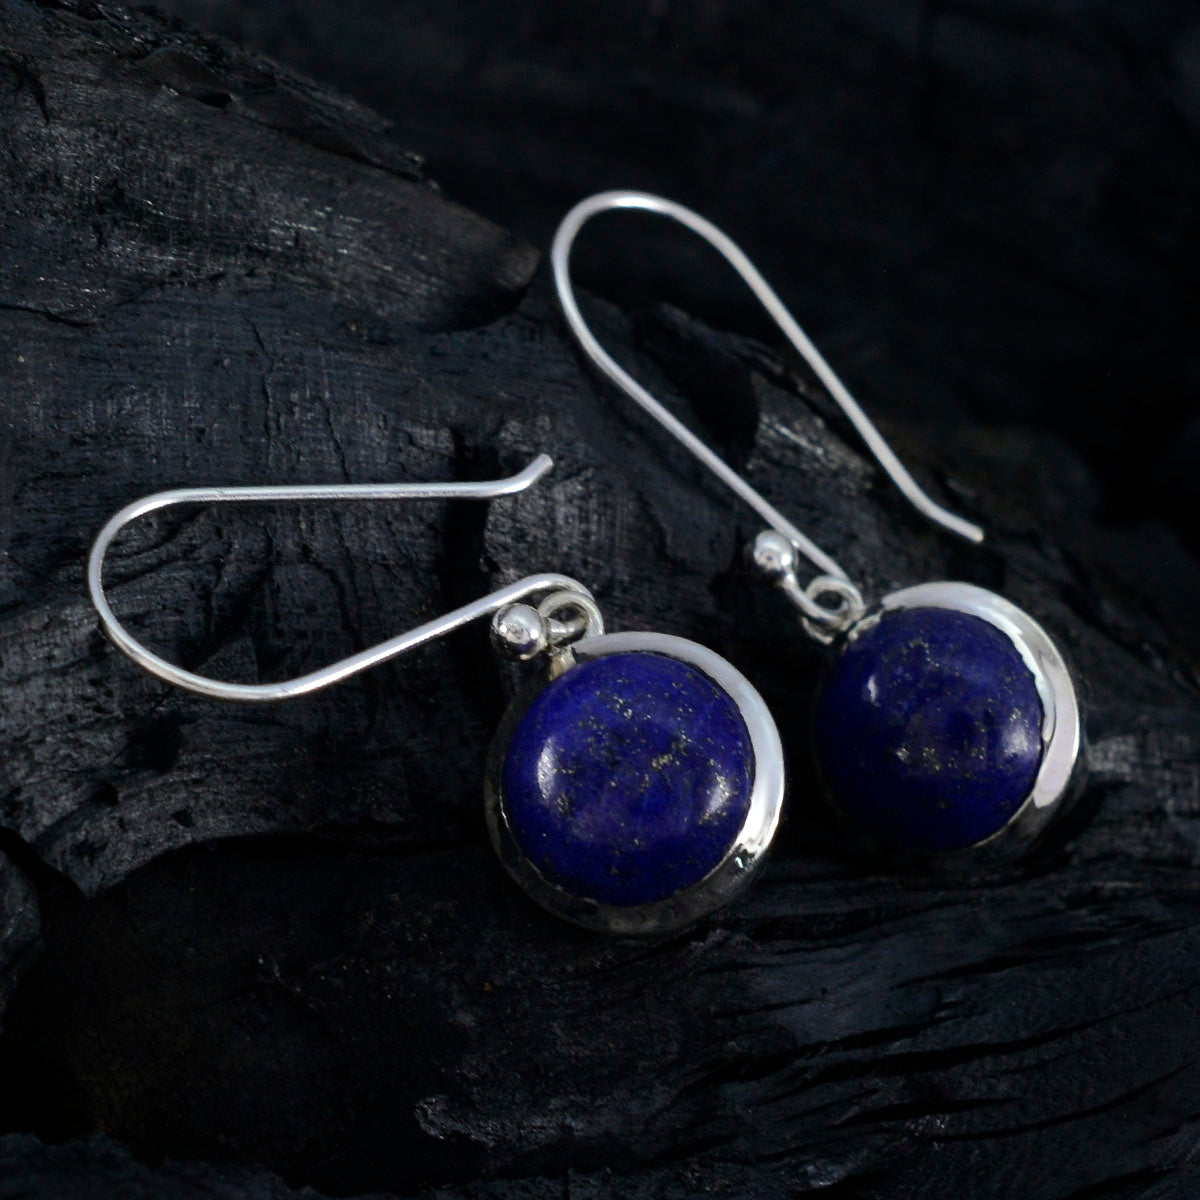 Riyo – boucle d'oreille artistique en argent sterling pour femme, lapis-lazuli, réglage de la lunette, boucle d'oreille bleue pendante